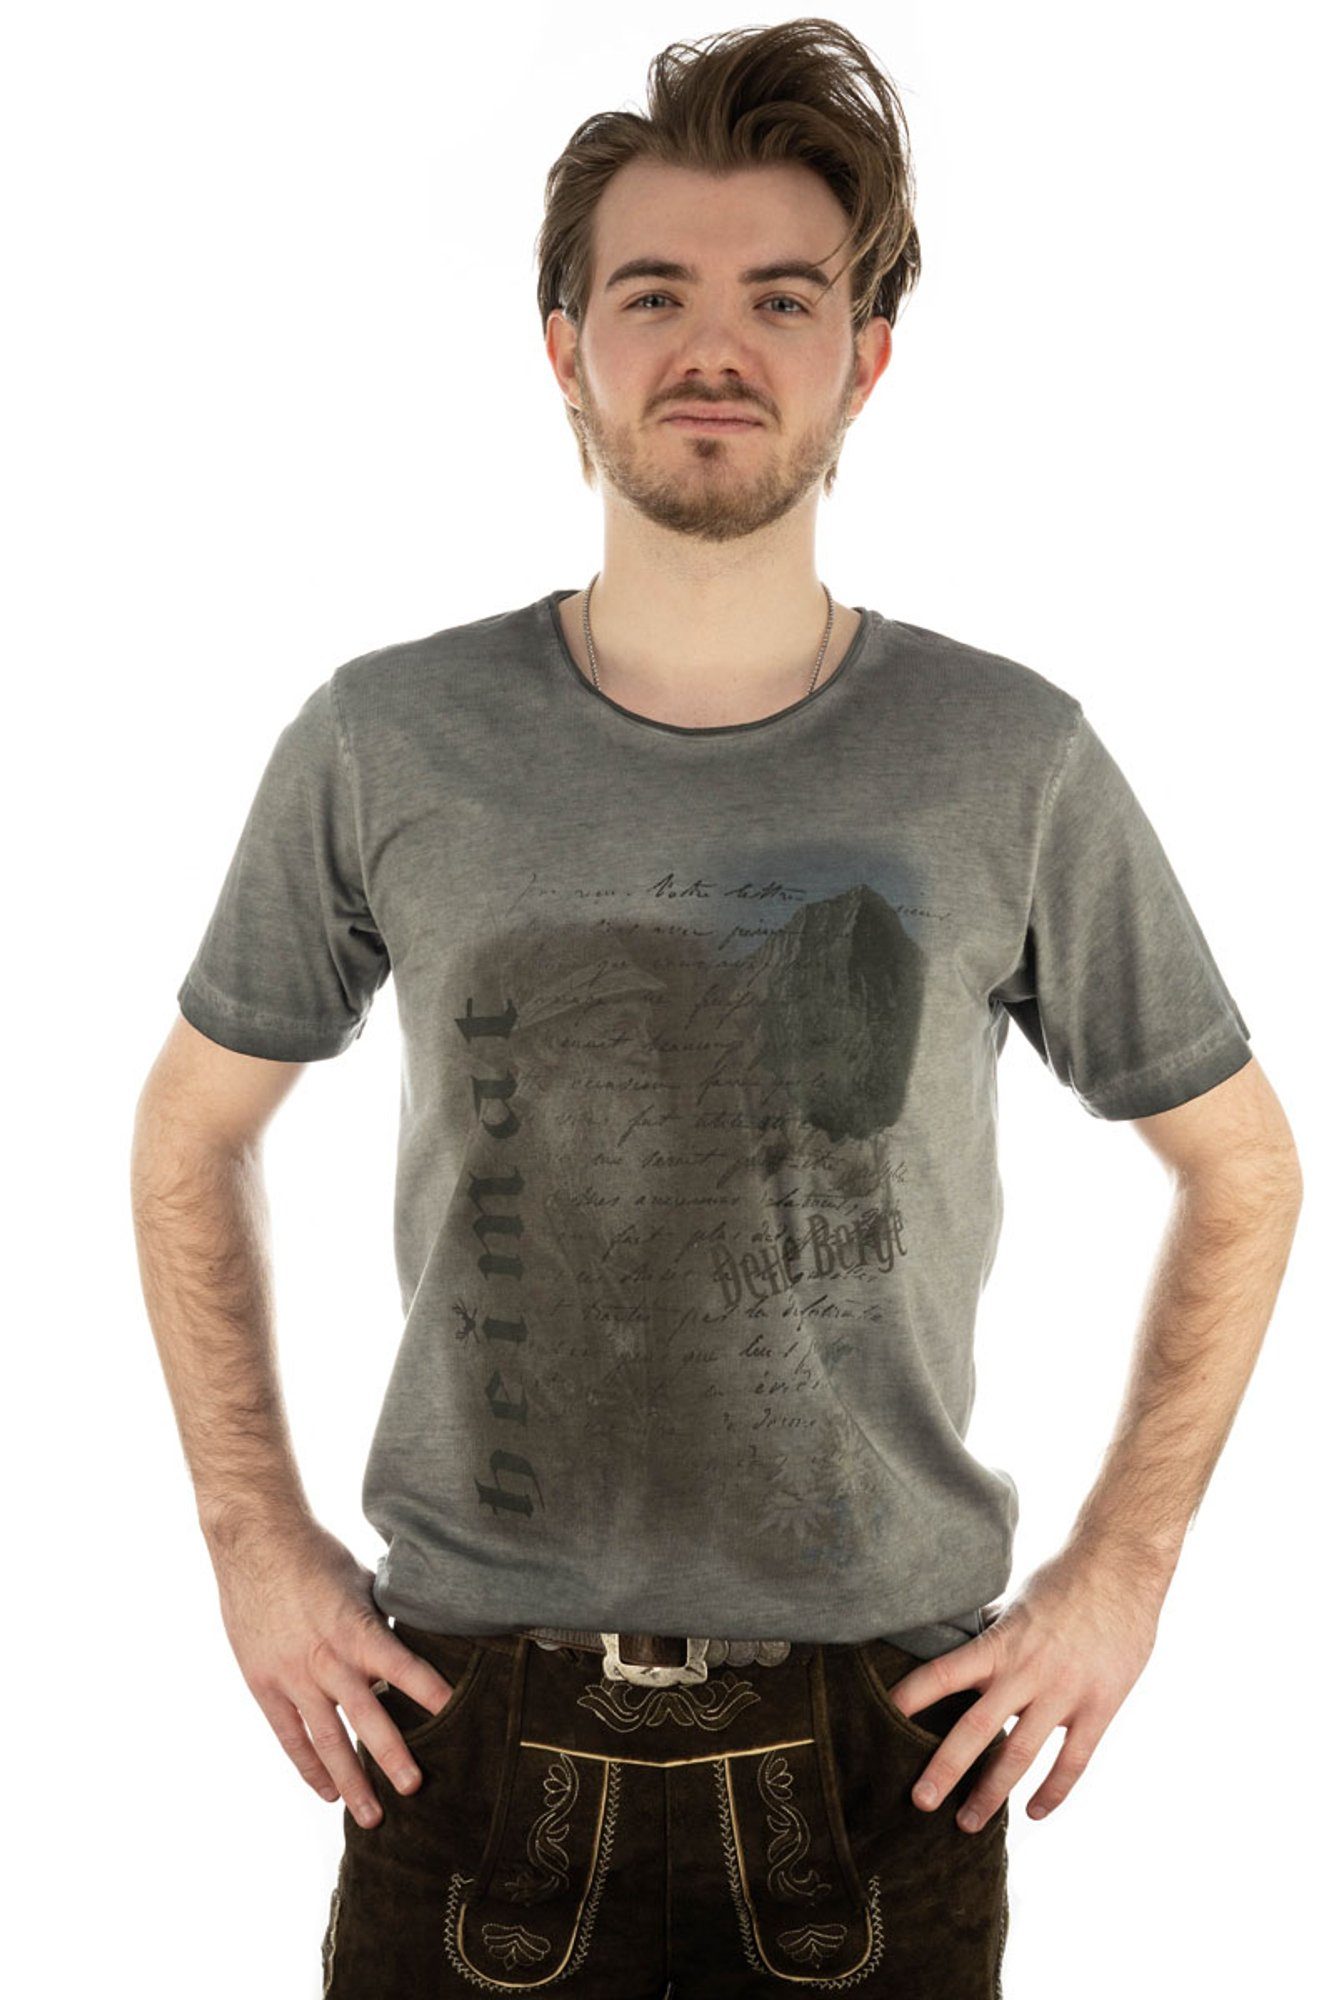 OS-Trachten Praiol Kurzarm mit Motivdruck T-Shirt anthrazit Trachtenshirt